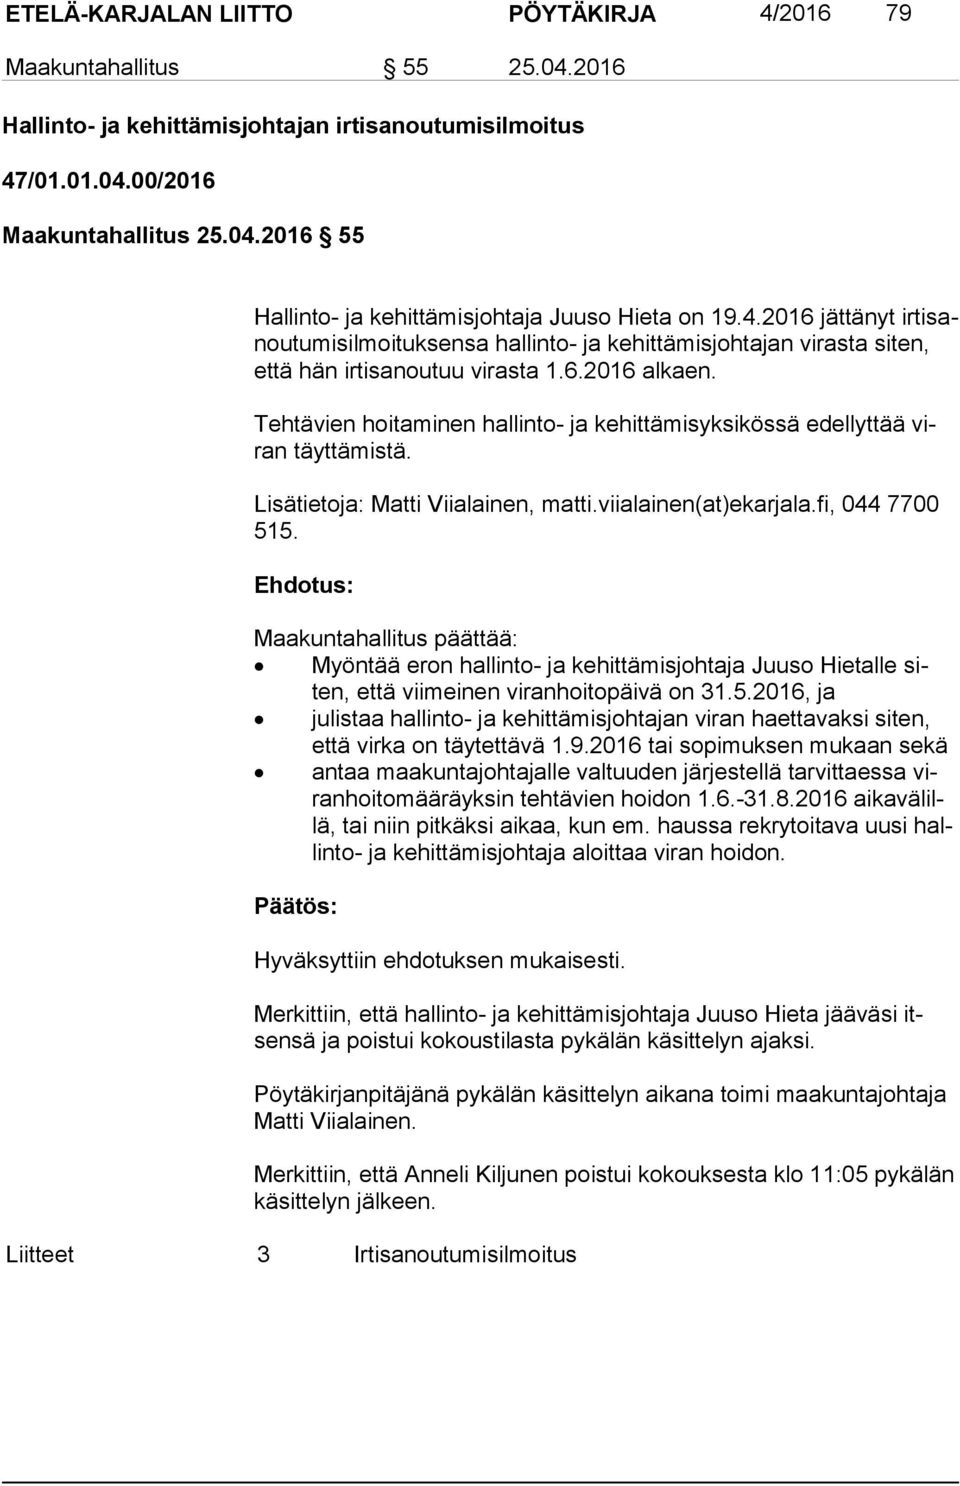 Tehtävien hoitaminen hallinto- ja kehittämisyksikössä edellyttää viran täyttämistä. Lisätietoja: Matti Viialainen, matti.viialainen(at)ekarjala.fi, 044 7700 515.